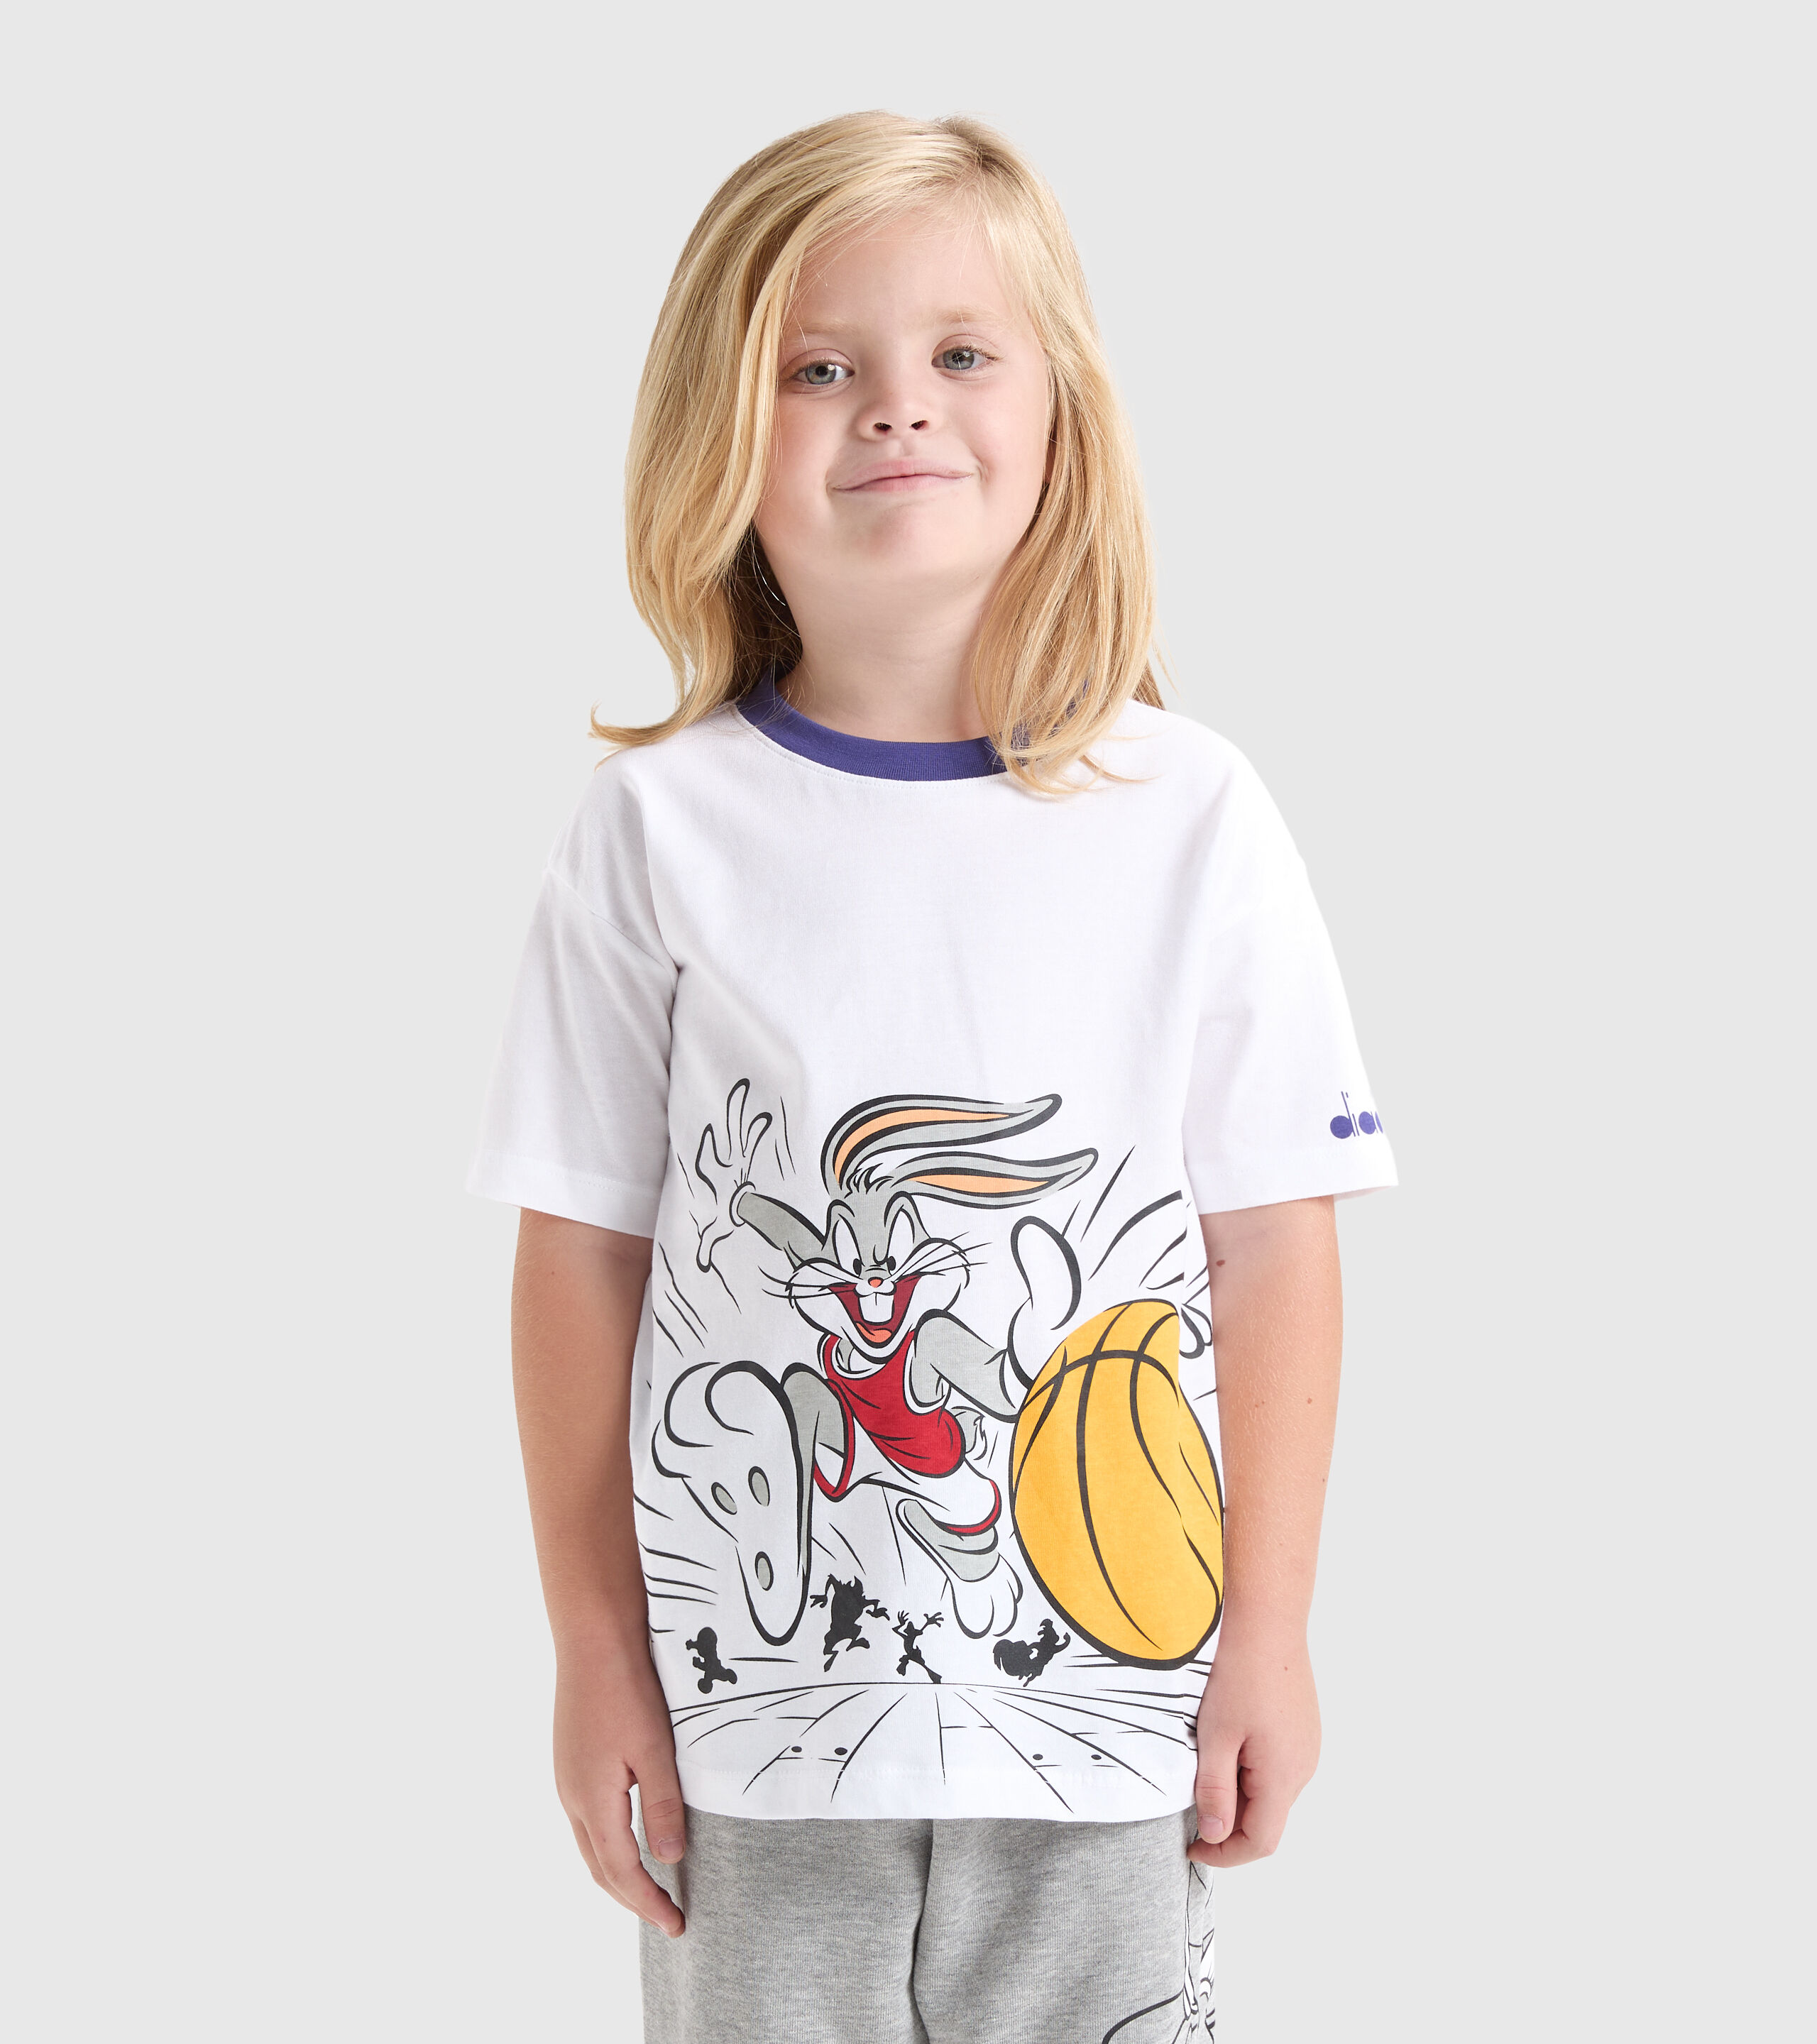 JU.T-SHIRT SS WB Sports T-shirt - Kids - Diadora Online Store DK